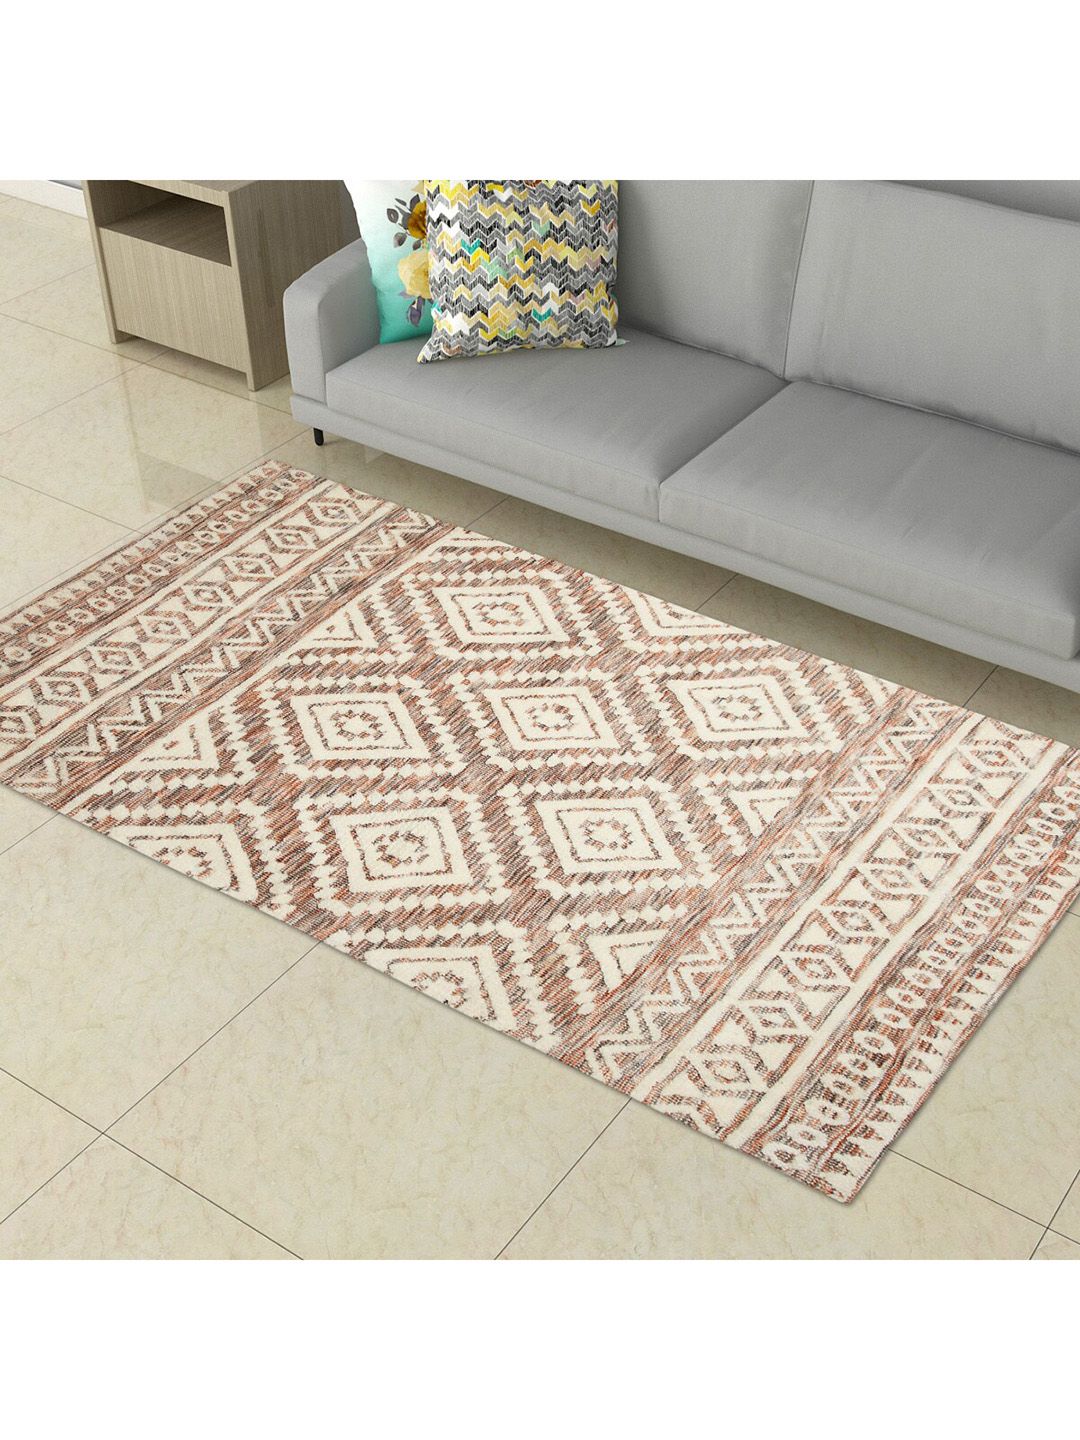 Home Centre Multicolour Textured Woven Area Carpet Price in India